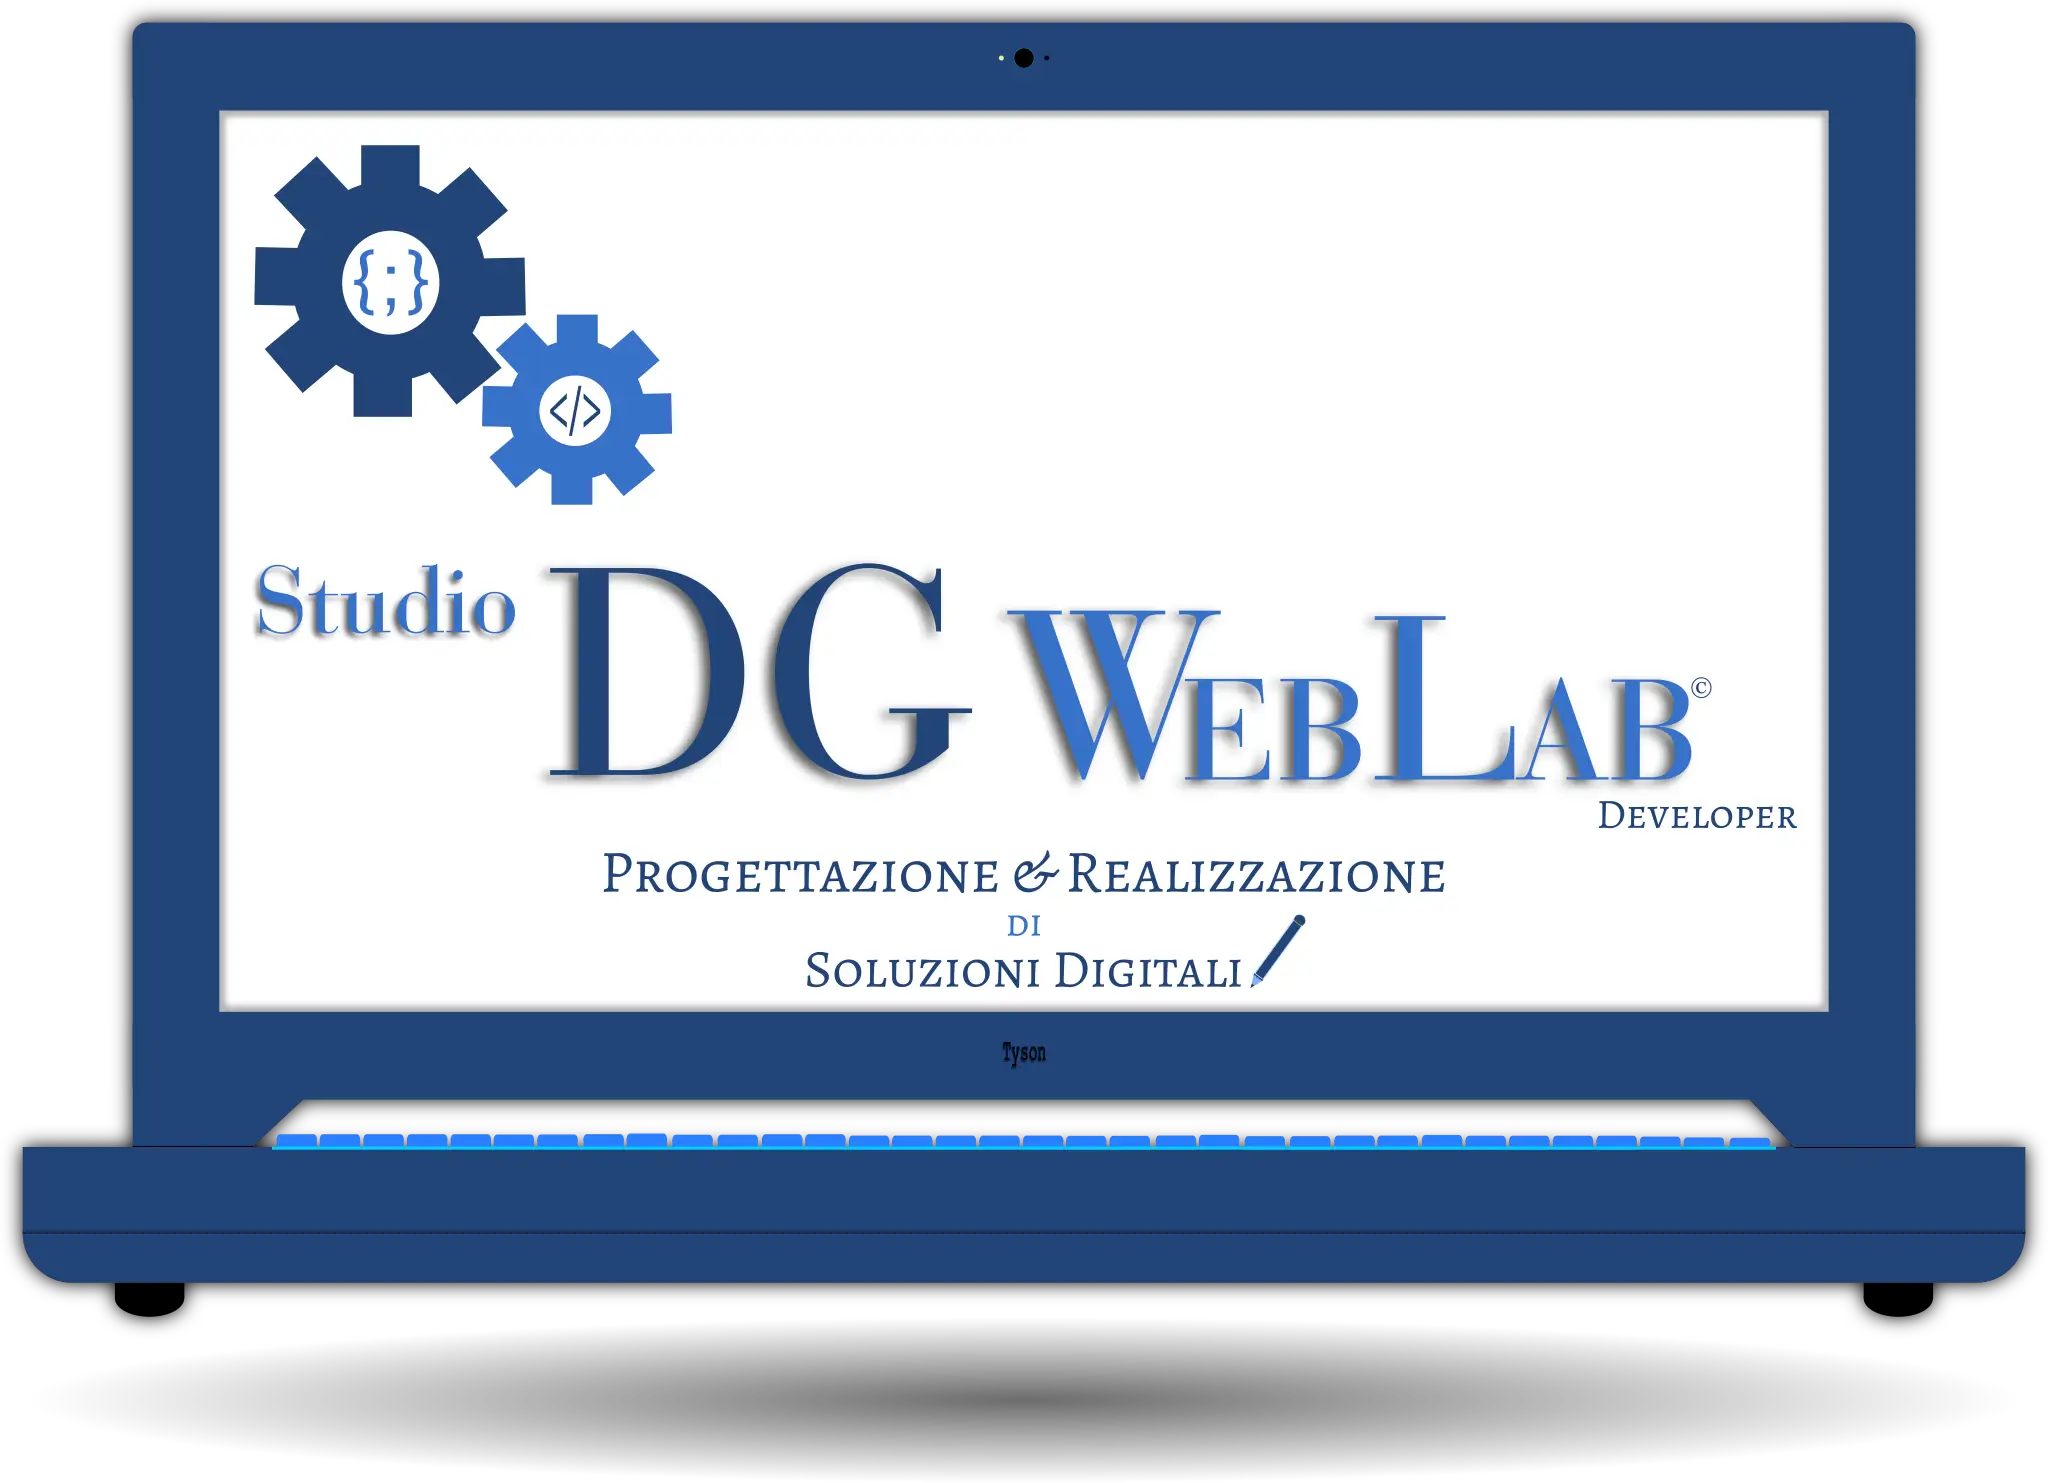 Logo Studio DG WebLab, Soluzioni digitali complete, dalla progettazione grafica alla creazione di siti web, applicazioni Android e contenuti digitali - studiodgweblab.dev